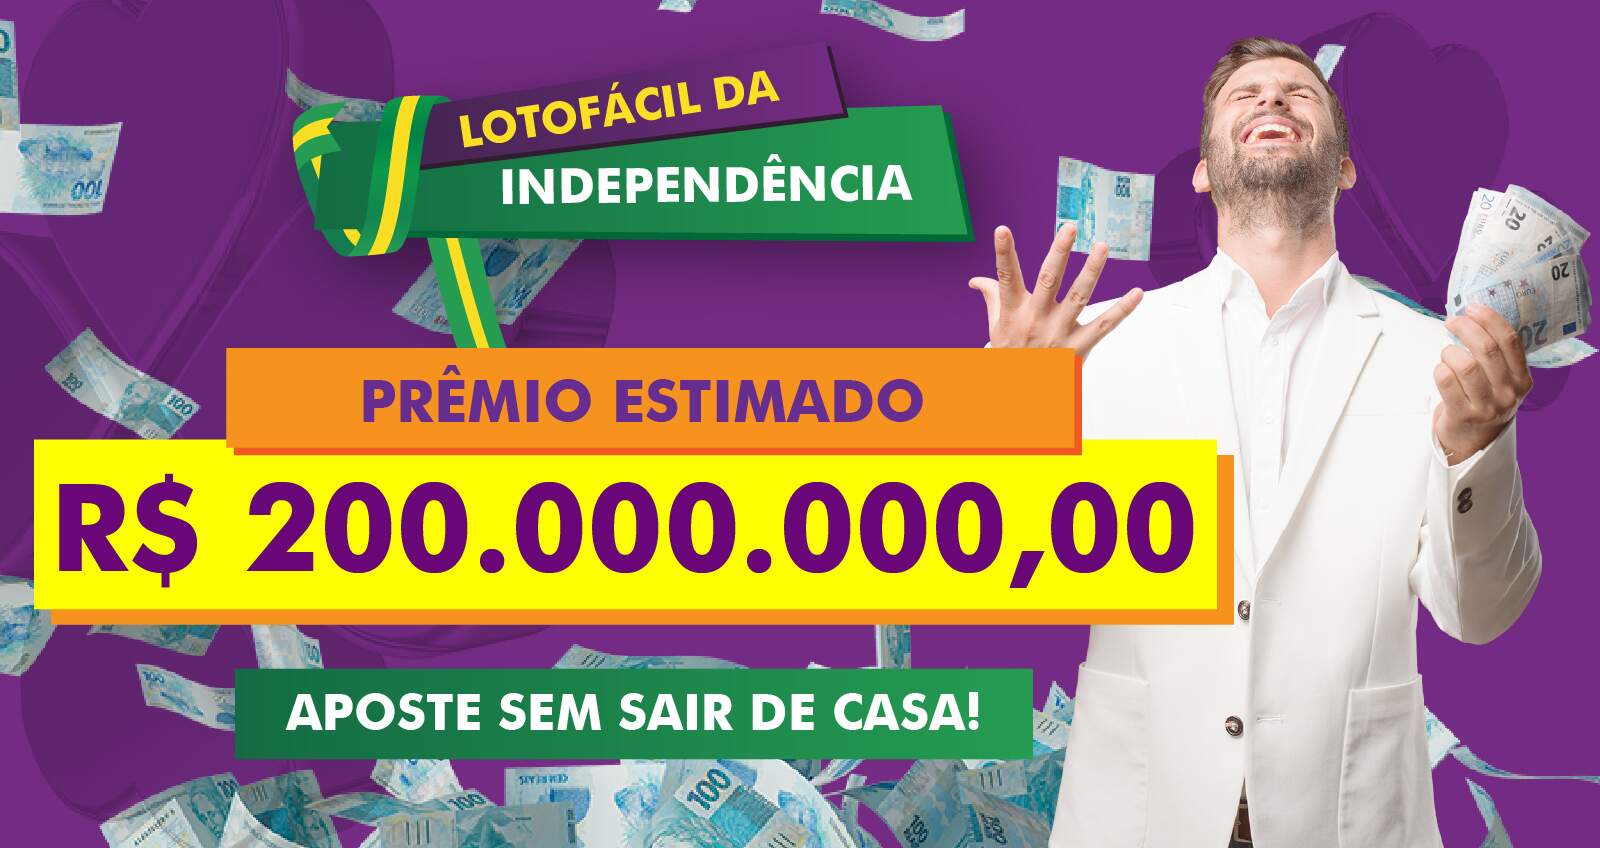 Lotofácil da Independência vai sortear prêmio de R$ 200 milhões - Nacional  - Estado de Minas